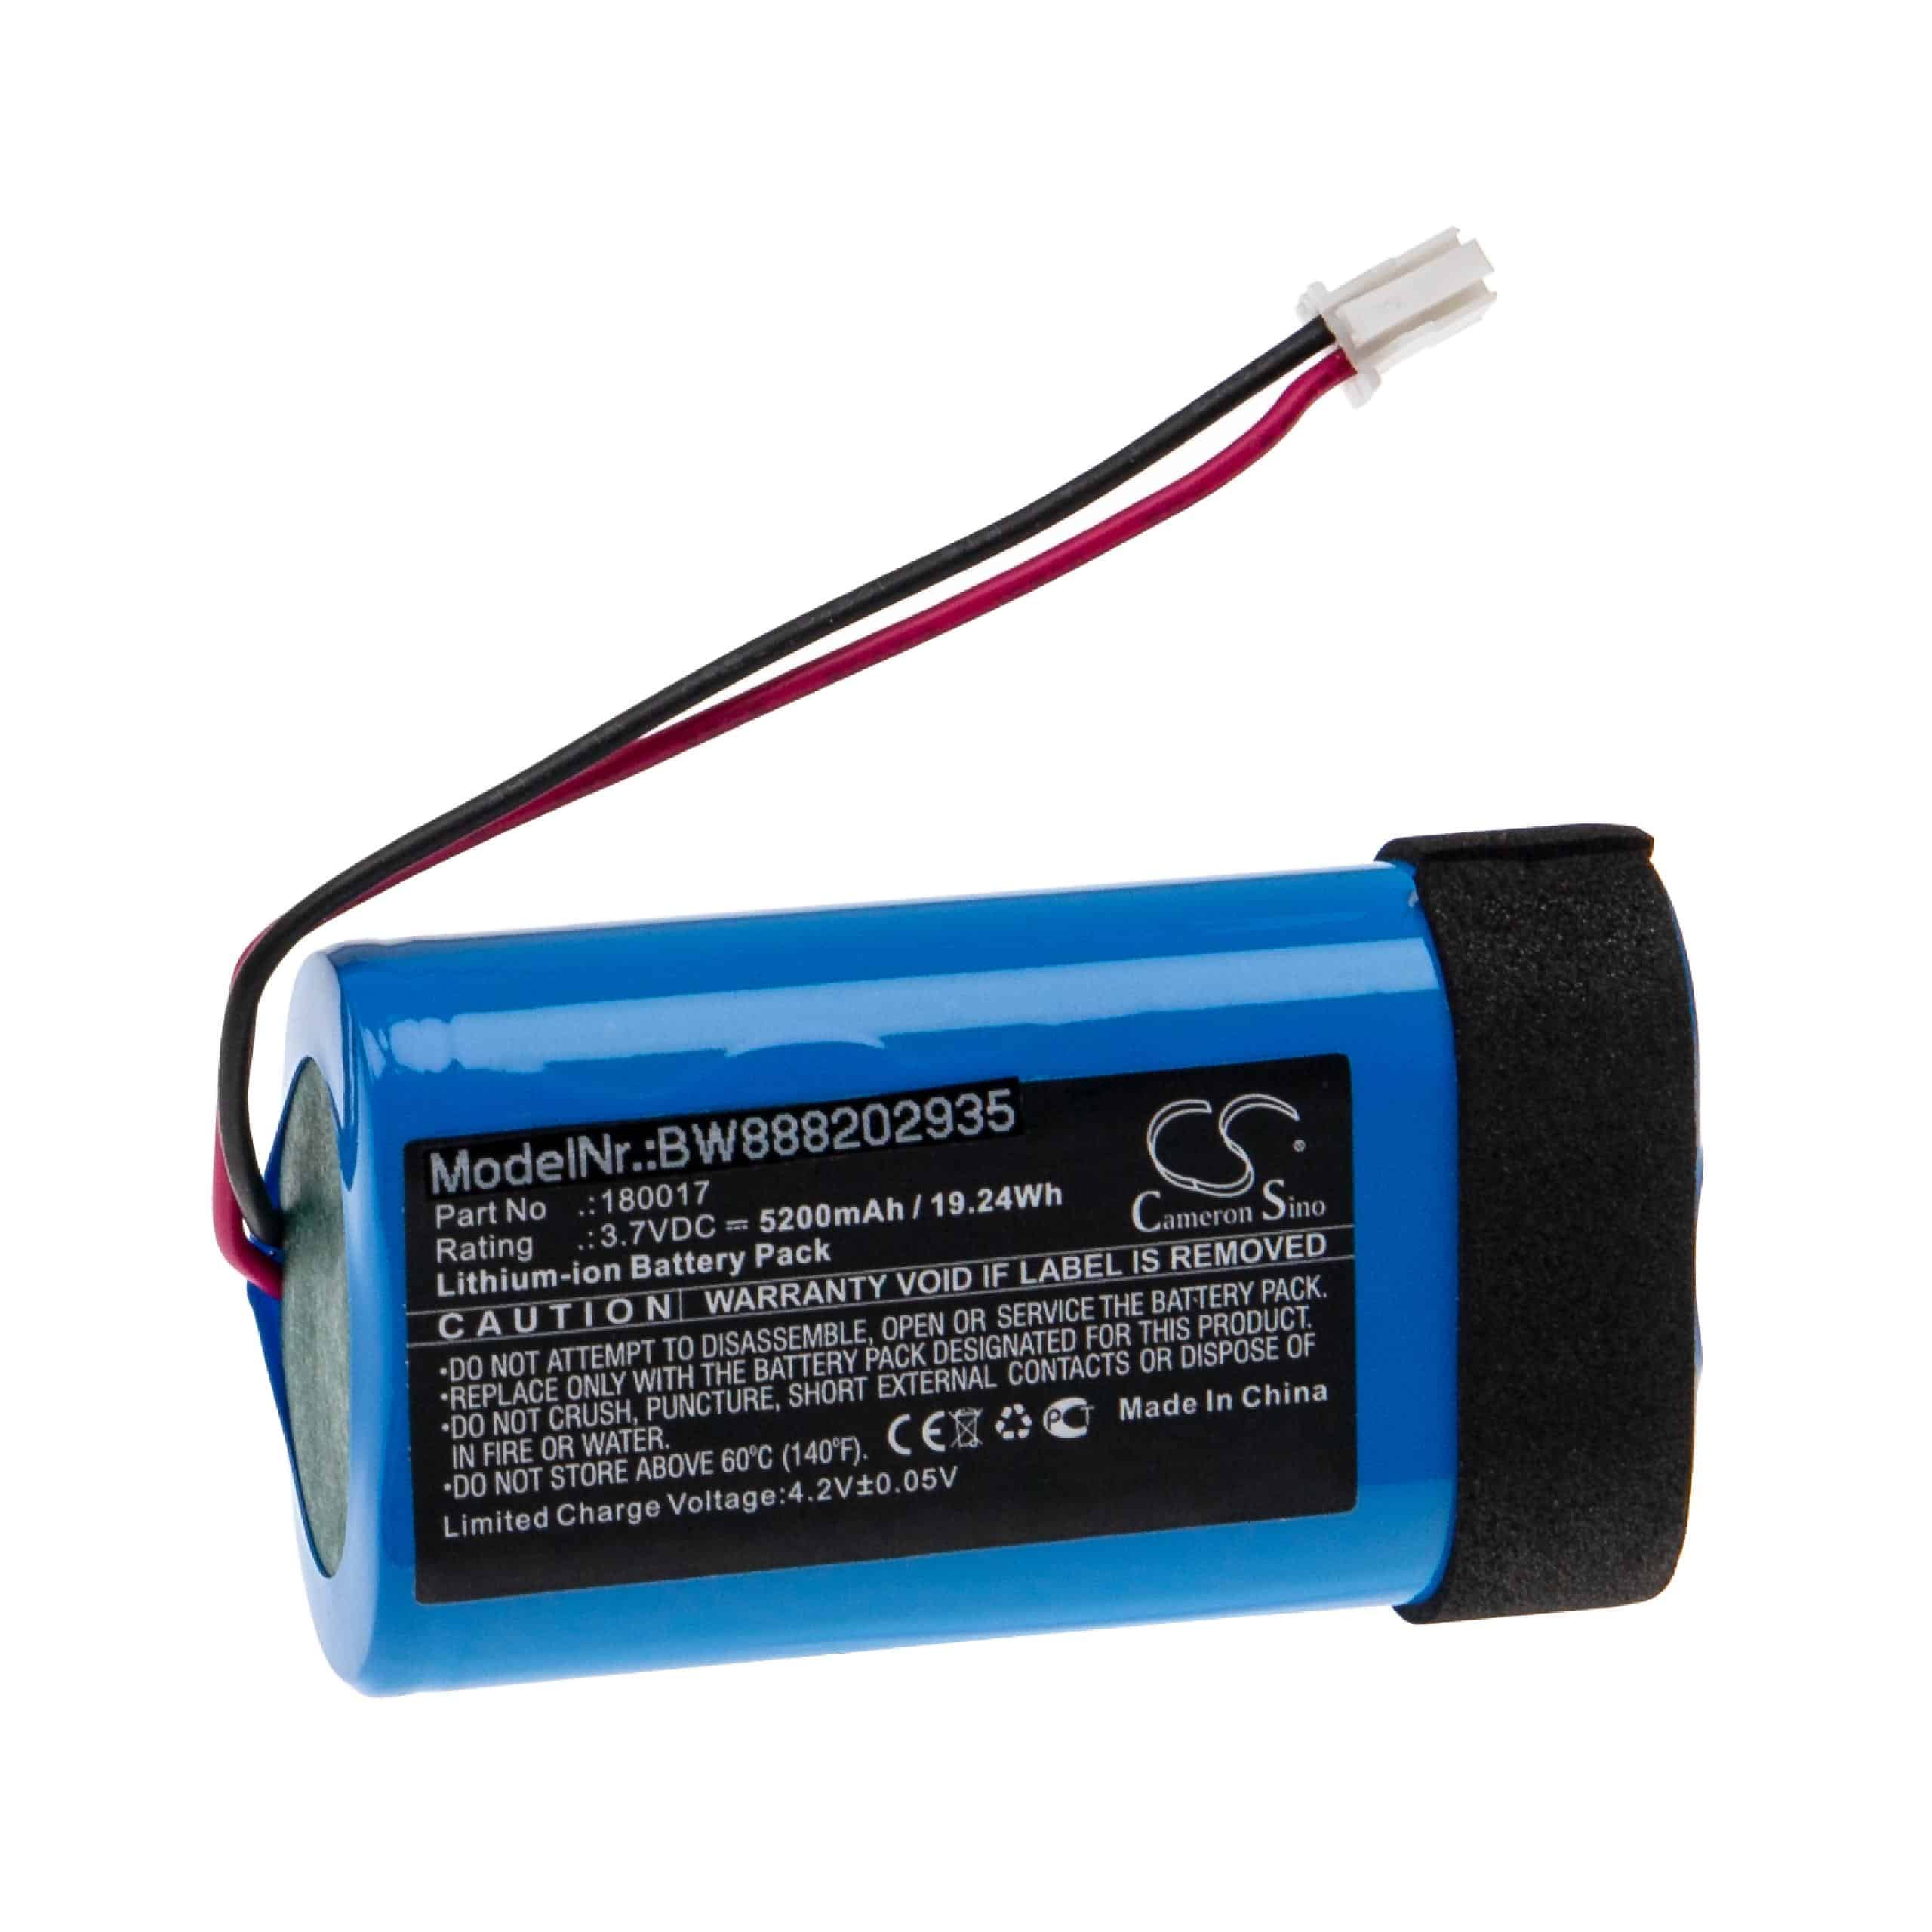 Batterie remplace Braven 180017 pour enceinte Braven - 5200mAh 3,7V Li-ion